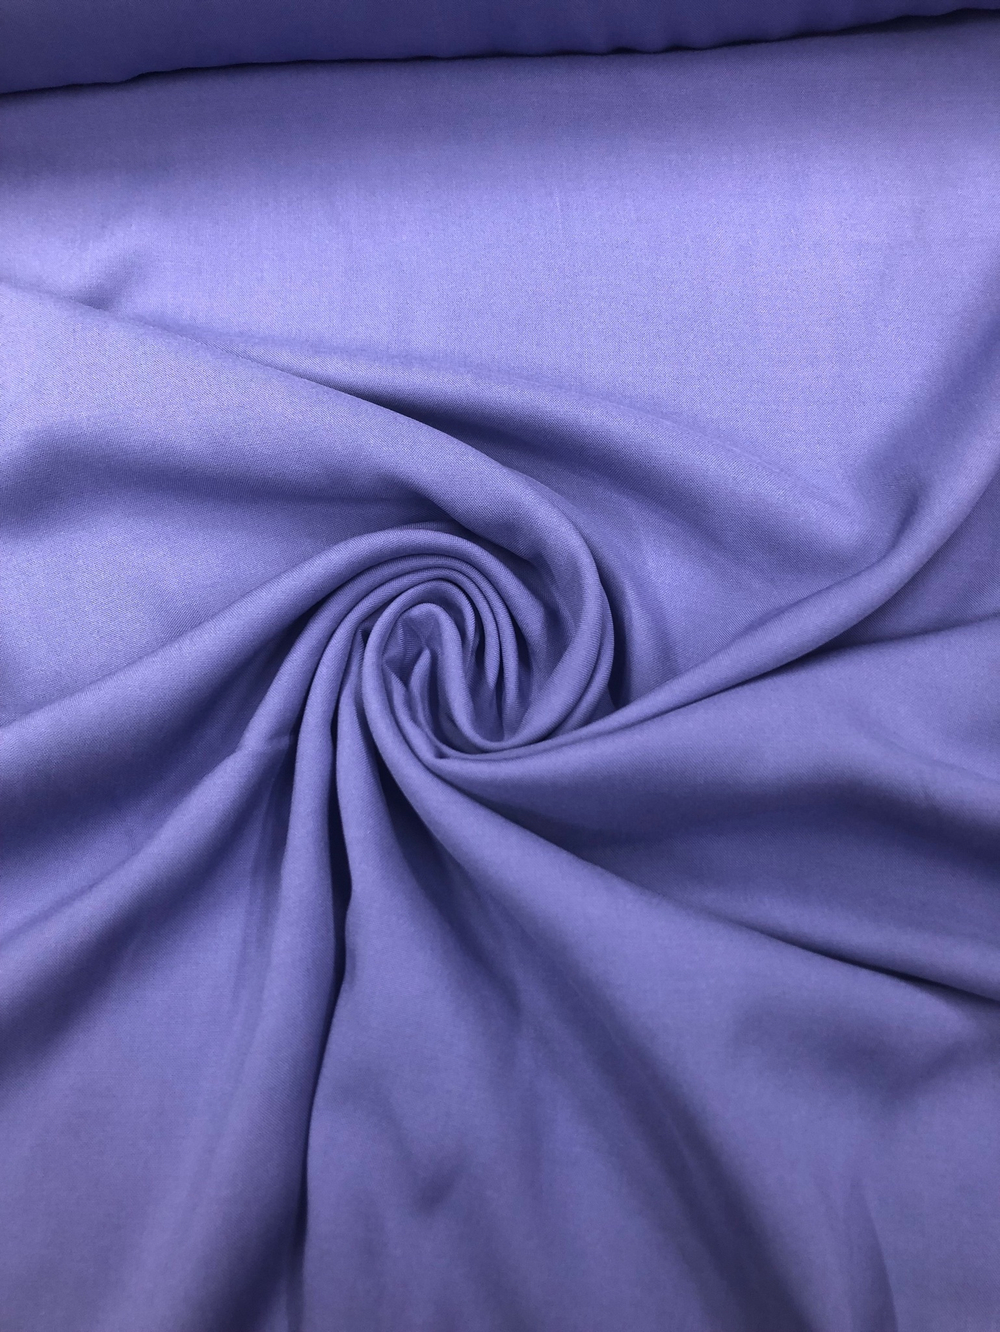 Ткань Штапель фиолетовый, артикул 324761